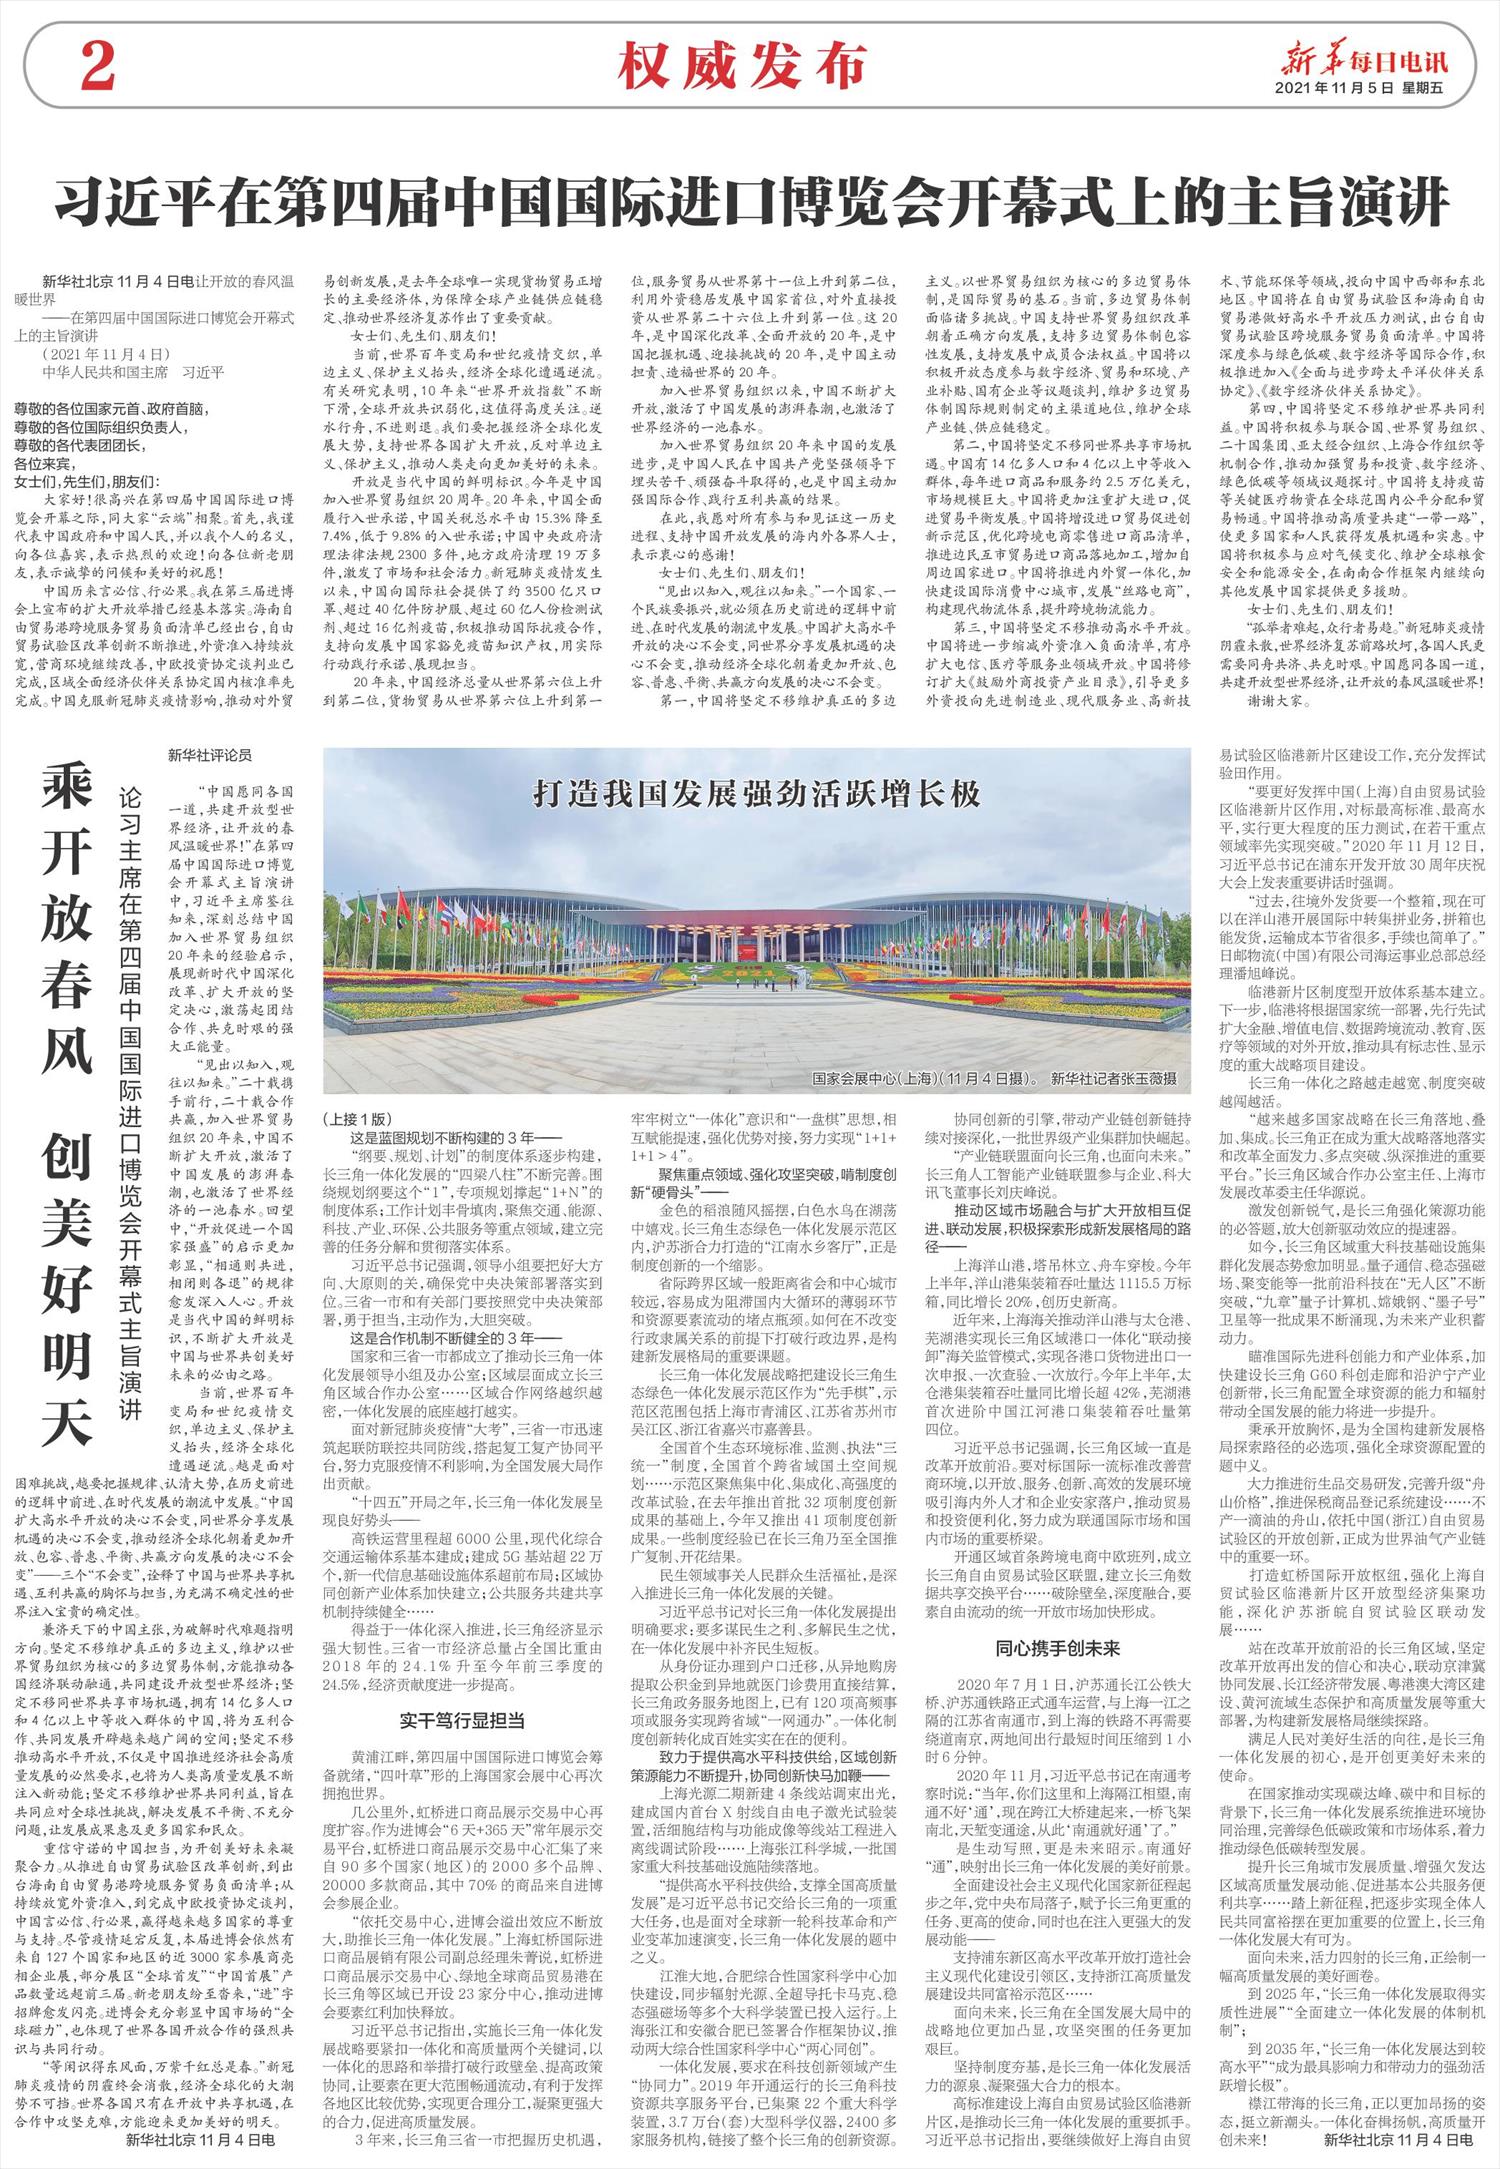 新华每日电讯-微报纸-2021年11月05日